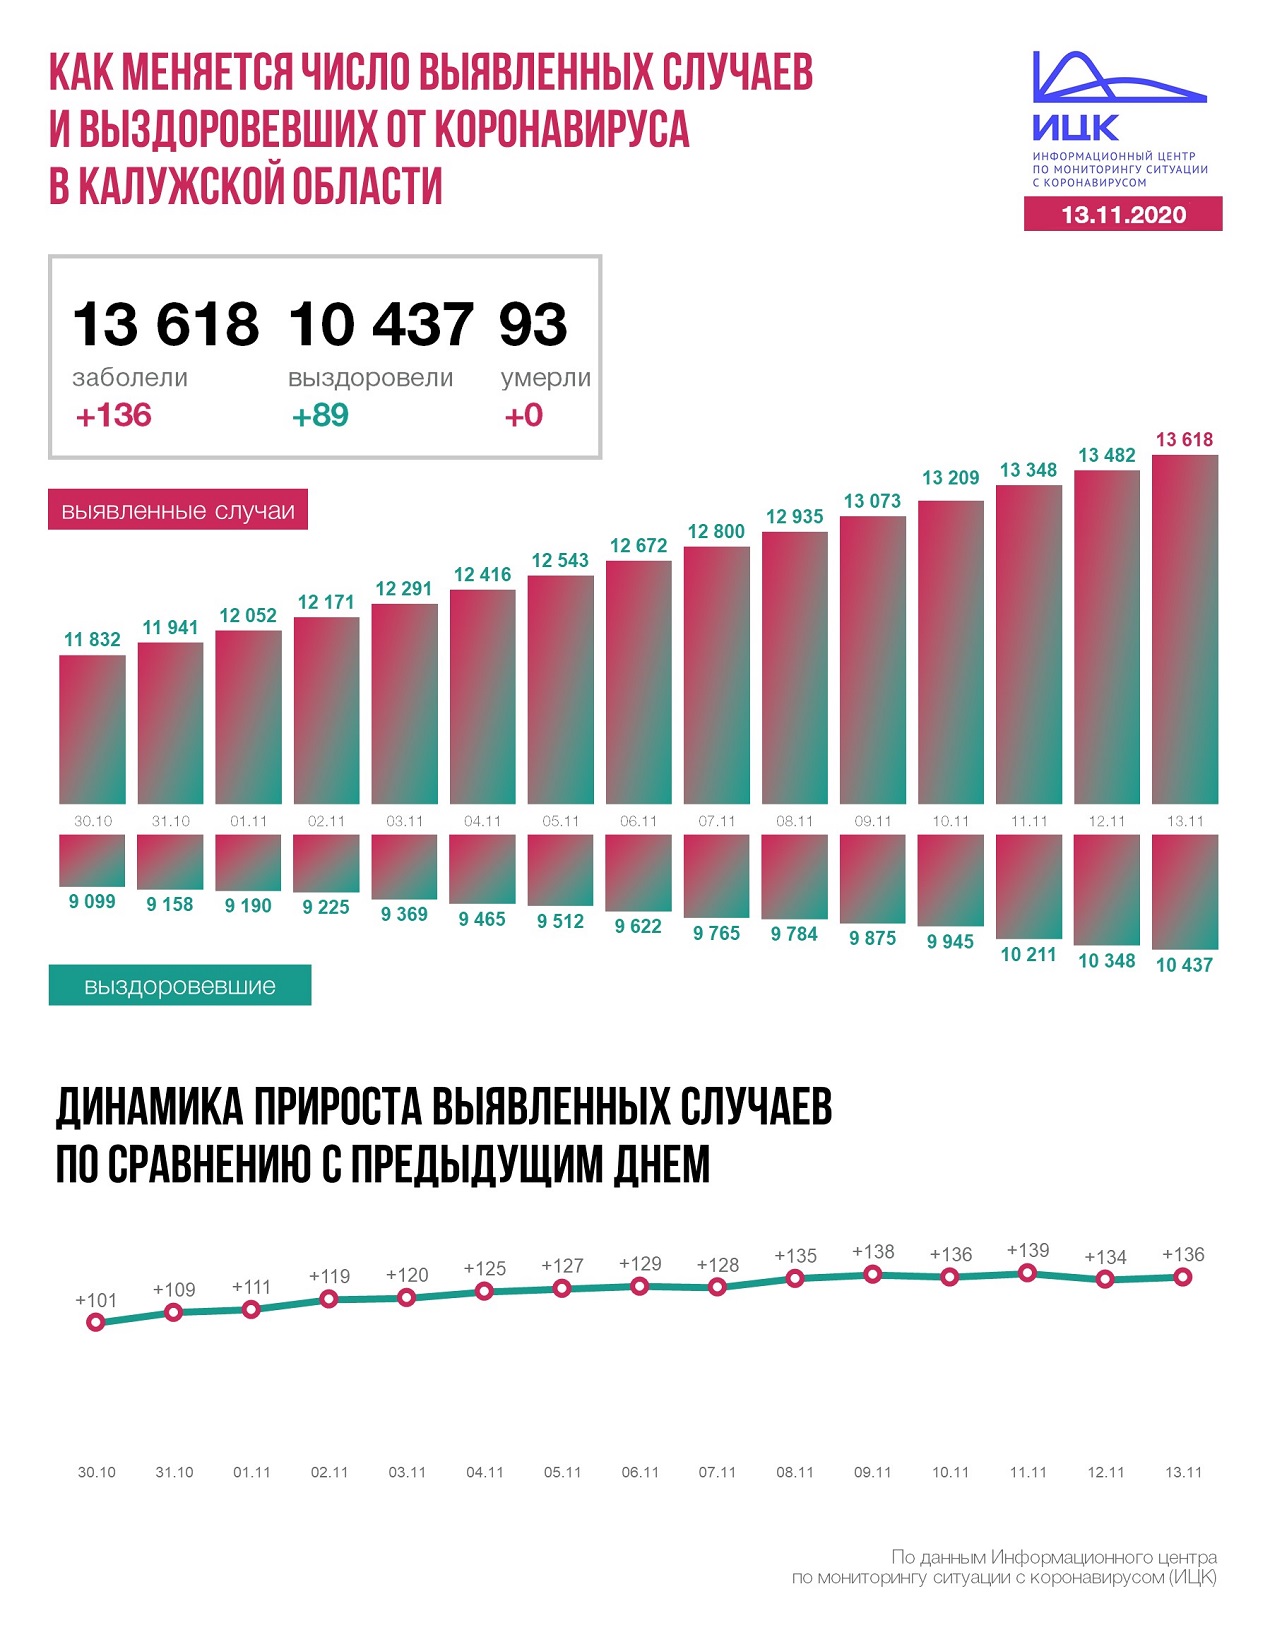  Официальные данные по коронавирусу в Калужской области на 13 ноября 2020 года.